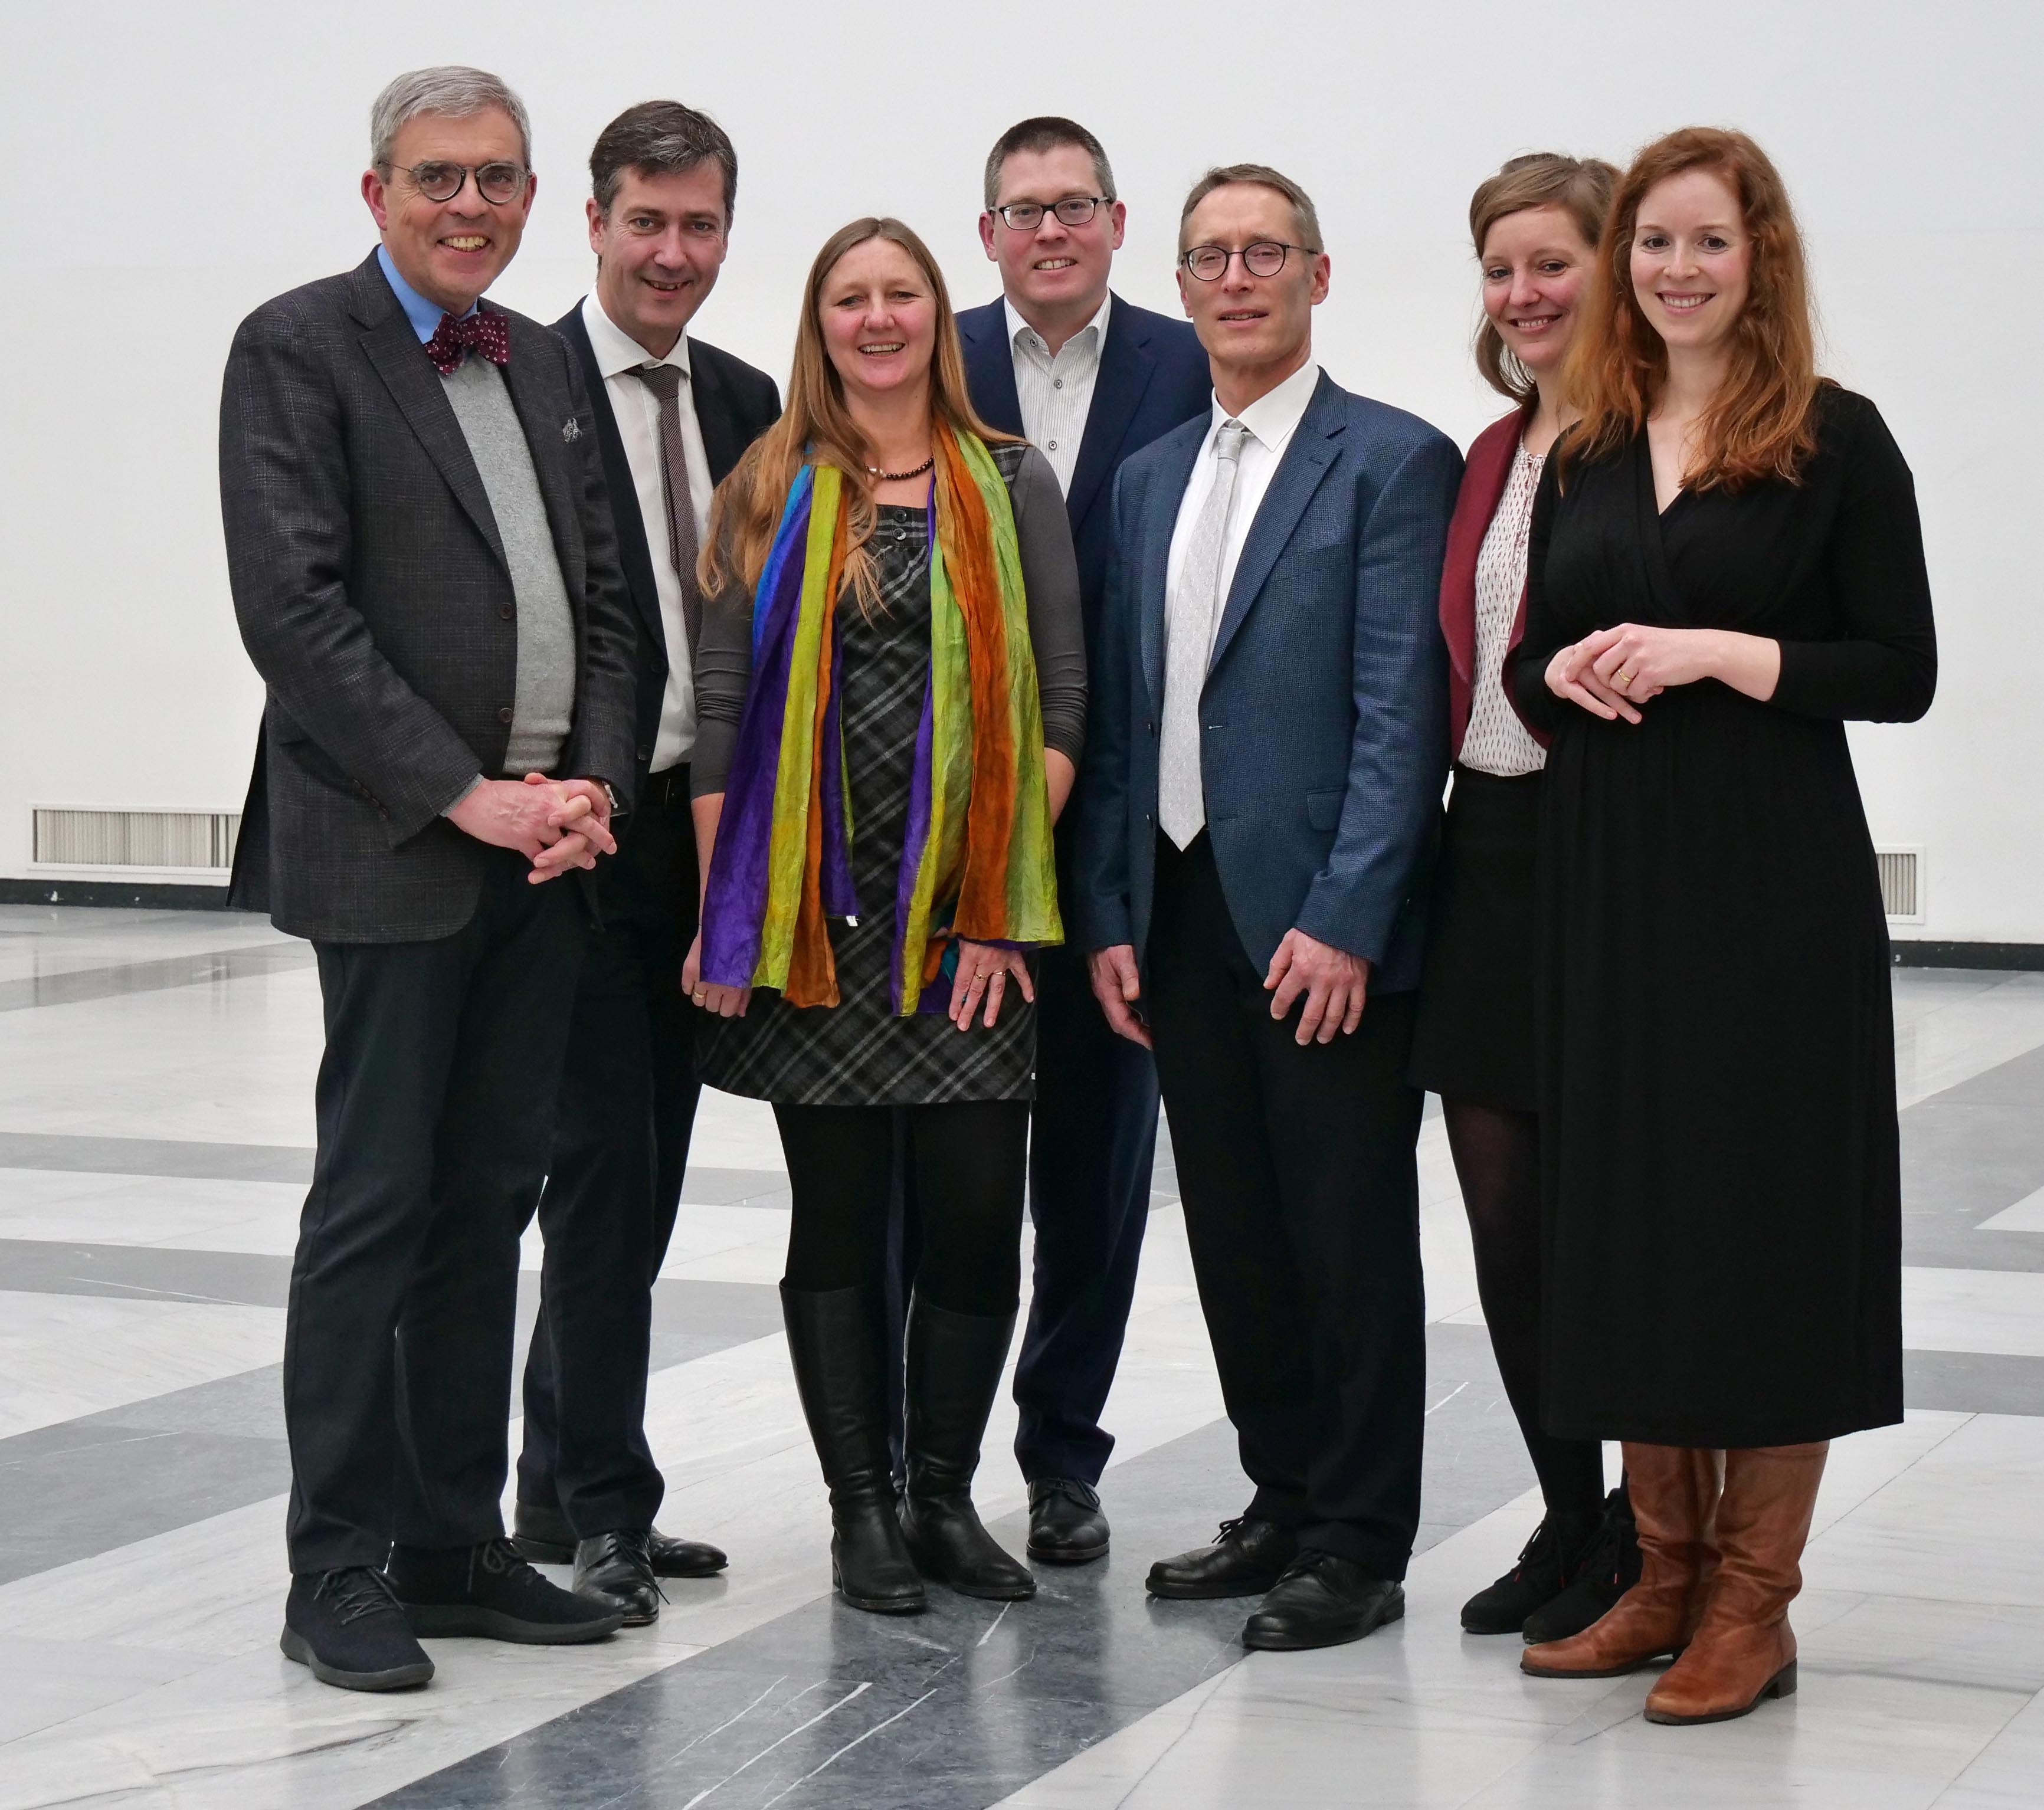 Teilnehmer des Pressegesprächs vom 21. Januar 2020 in Würzburg